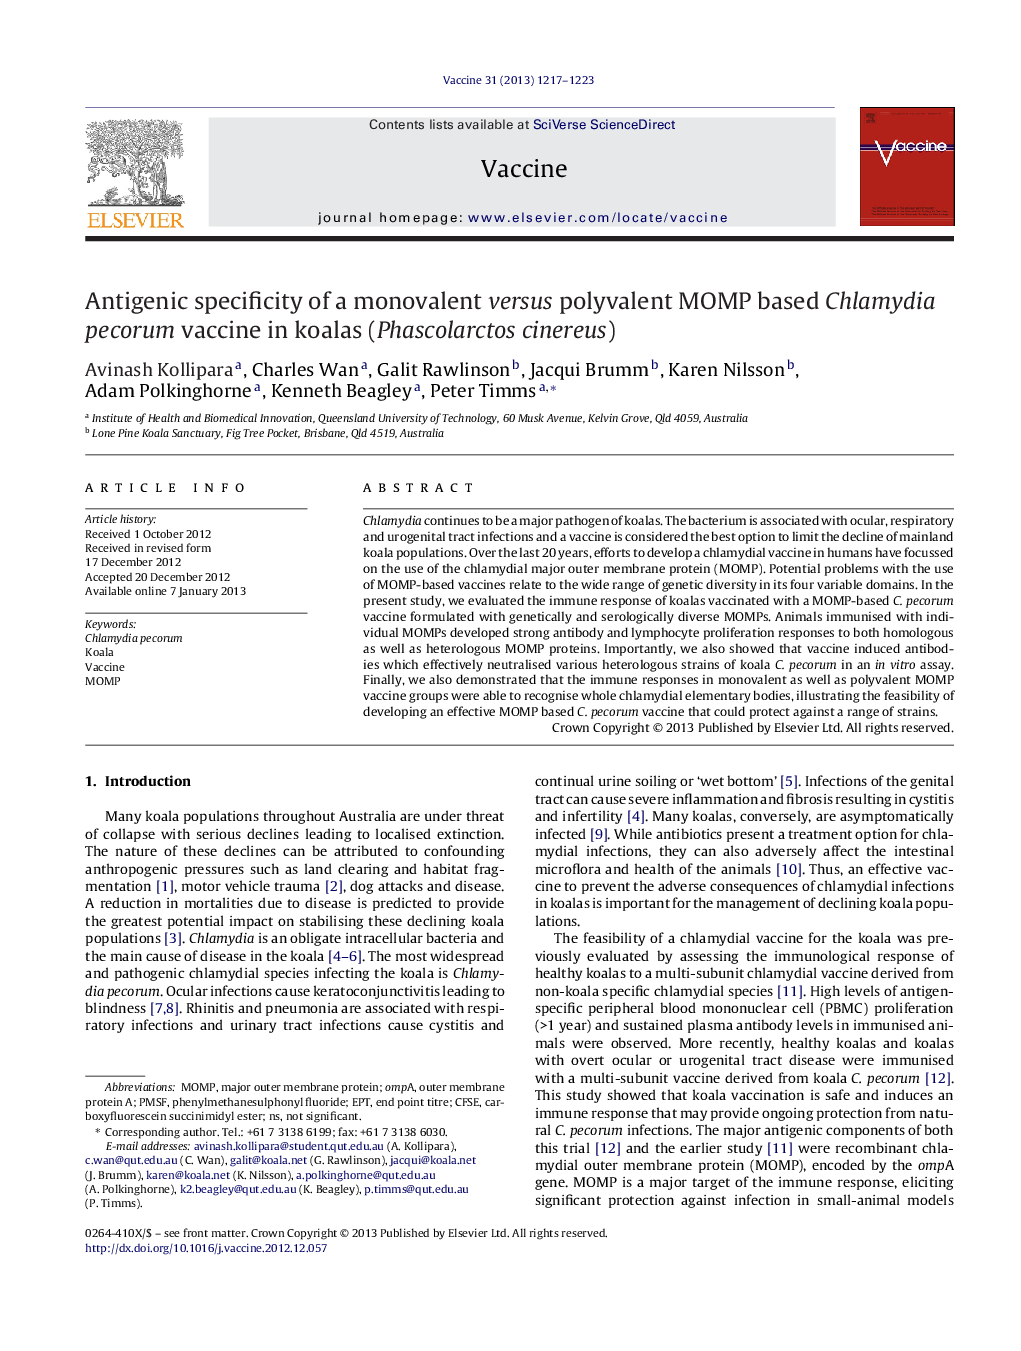 Antigenic specificity of a monovalent versus polyvalent MOMP based Chlamydia pecorum vaccine in koalas (Phascolarctos cinereus)